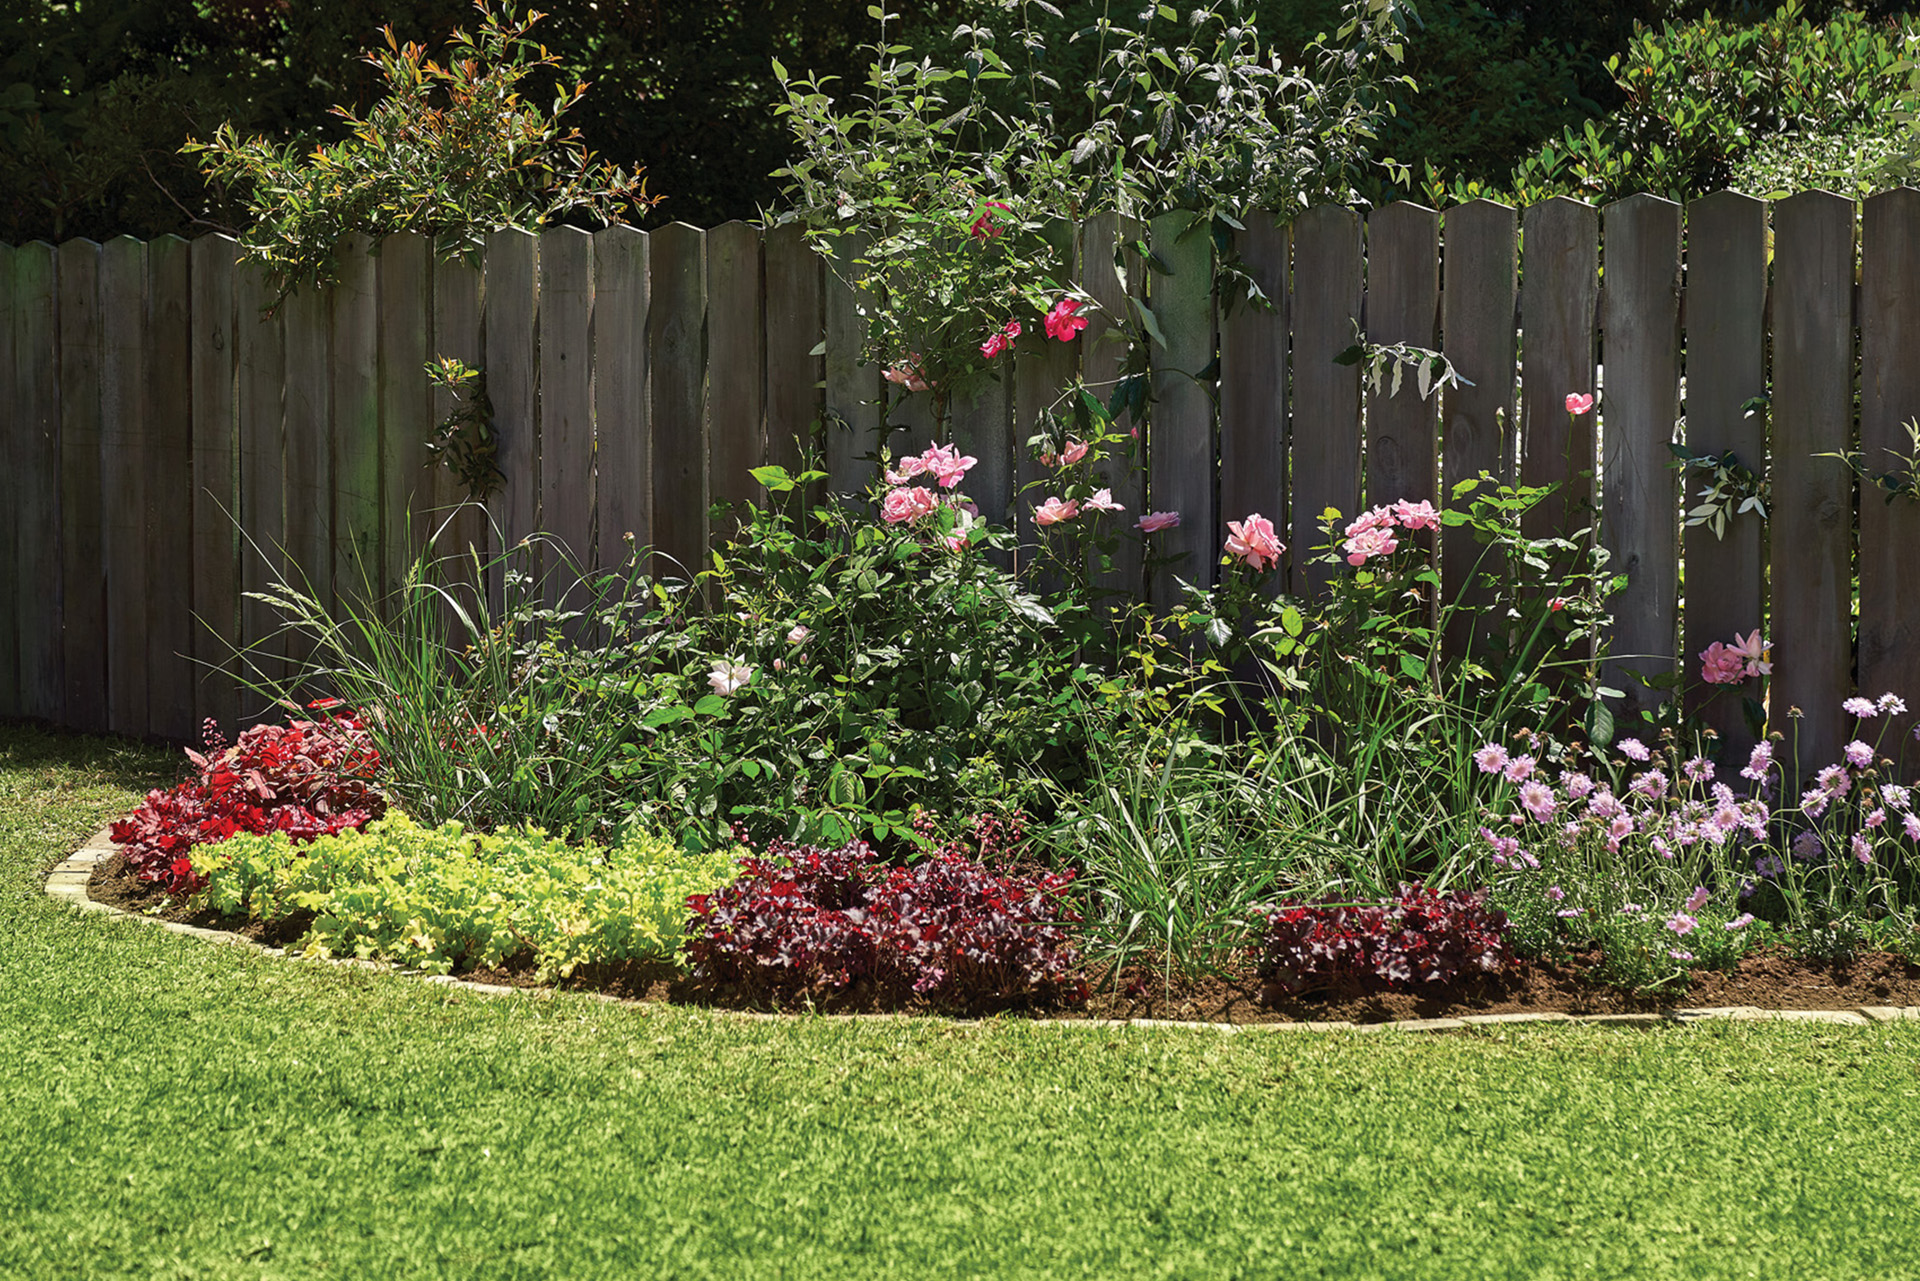 Perk met omranding en met kleine grassen en rozen aan de rand van een kleine tuin, grenzend aan middelhoog houten hek.